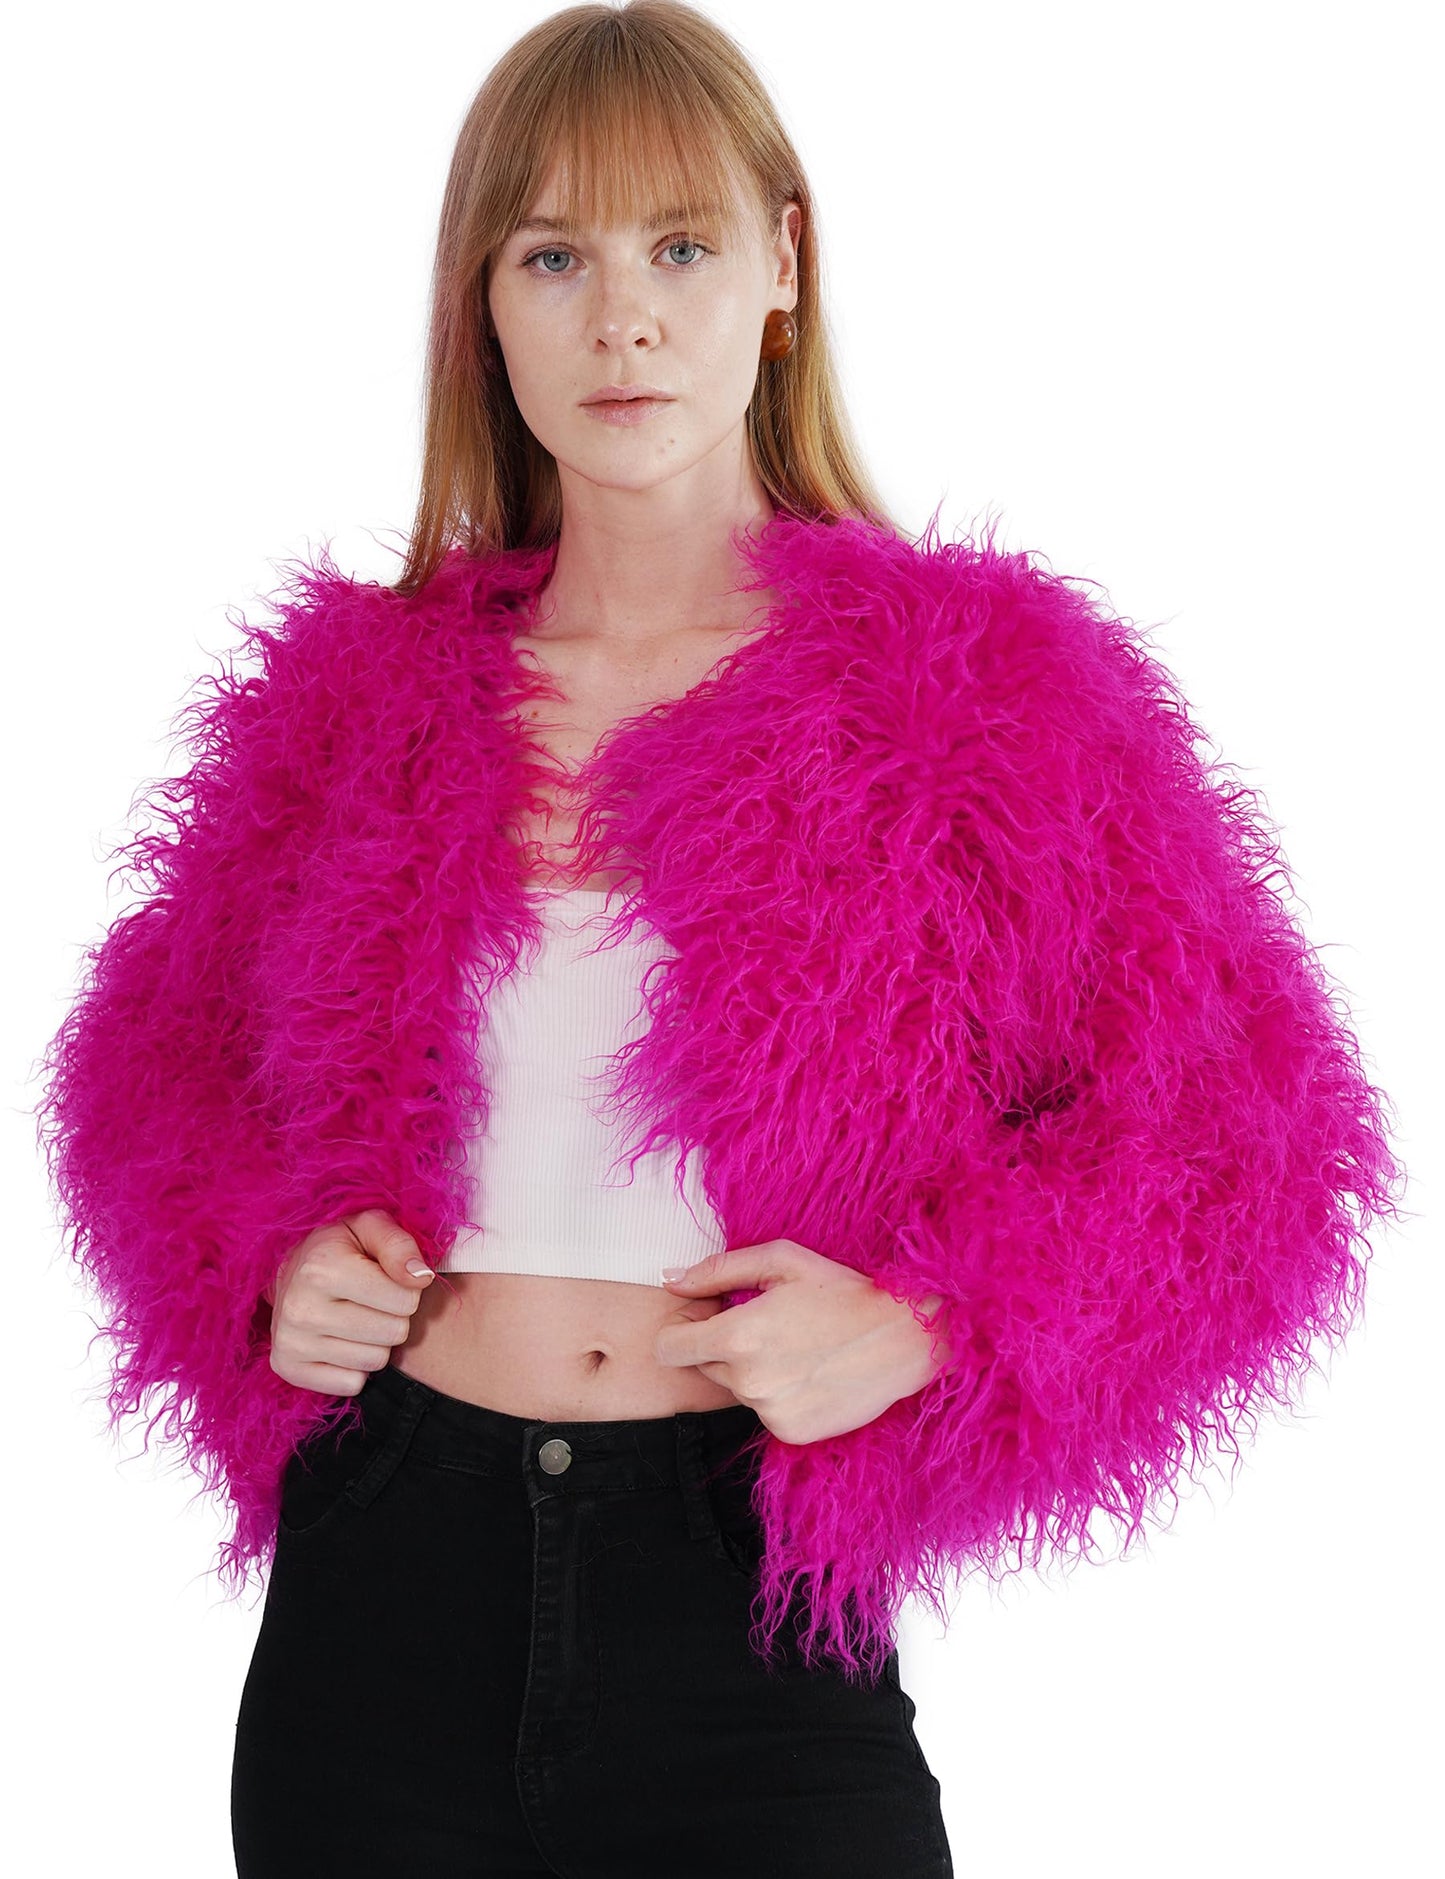 YUAKOU Women's Shaggy Faux Fur Outwear Coat Jacket Long Sleeve Warm Winter